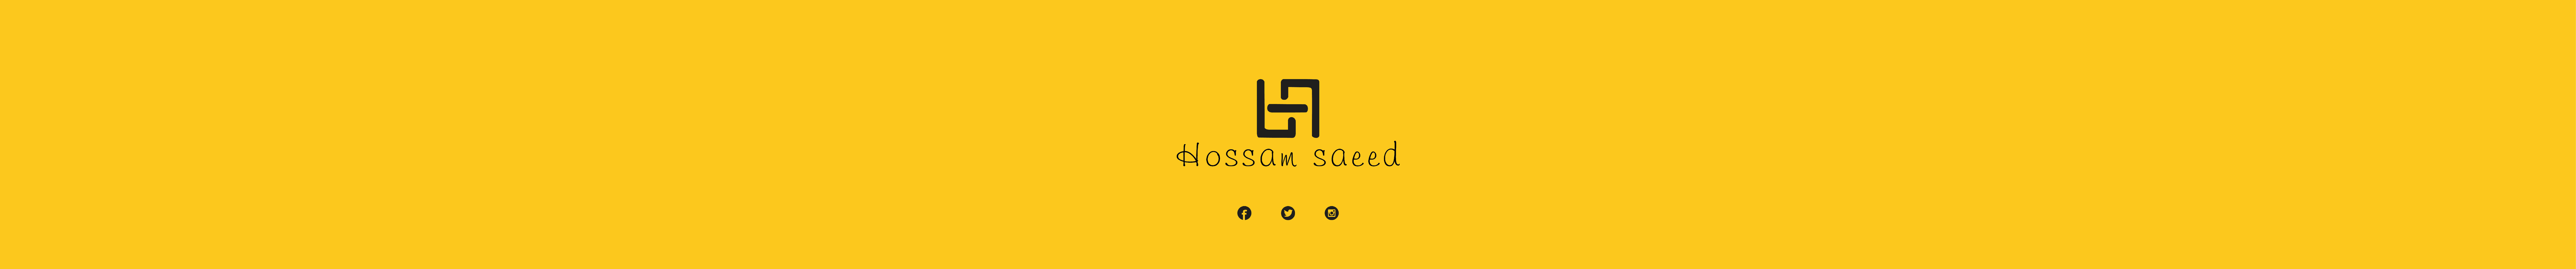 Banner de perfil de Hossam saeed